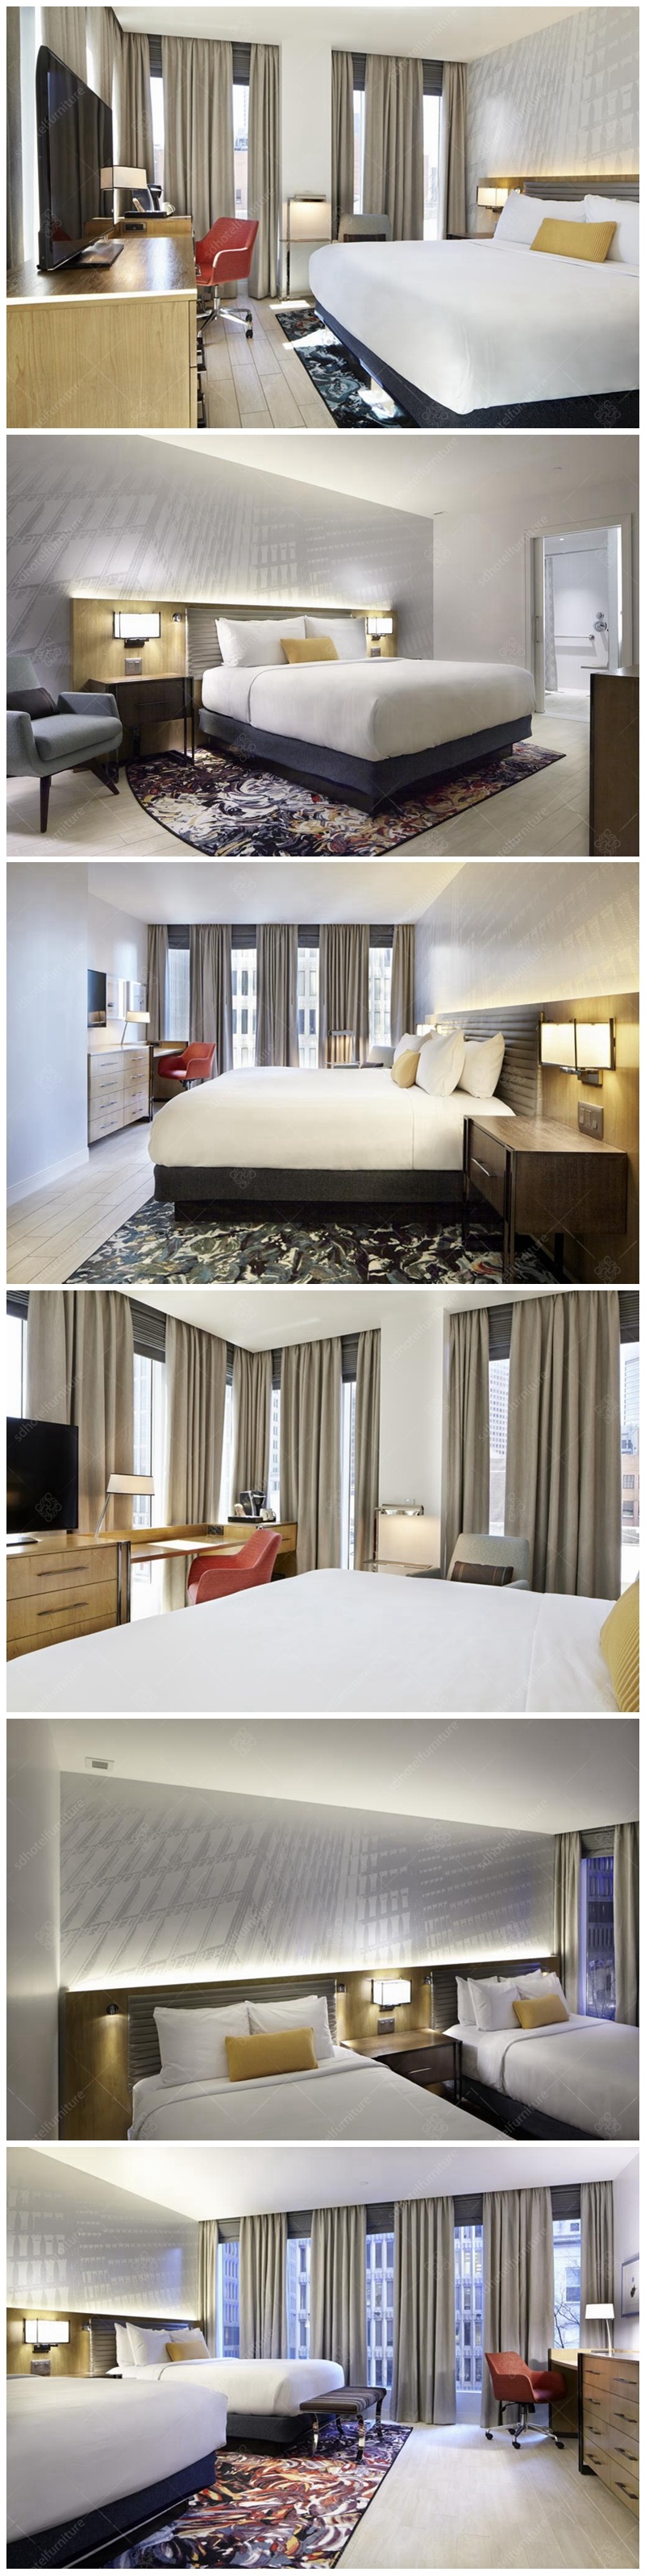 Simple Design European Hotel Bedroom Furniture Sets Commercial Furniture Sets Melamine Surface